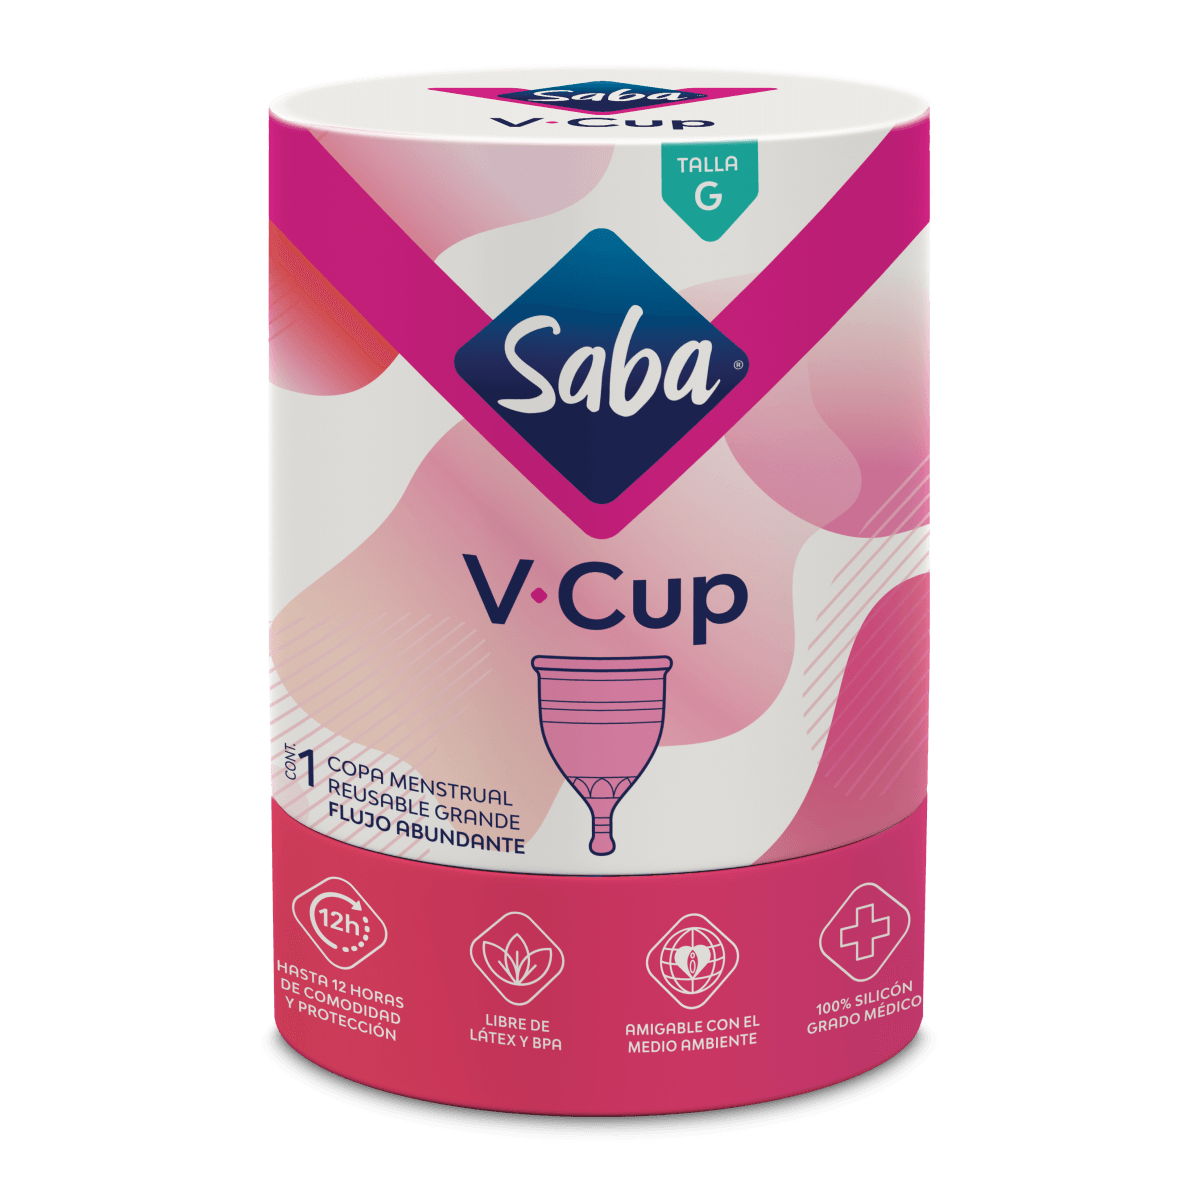 Saba_V_Cup_G_Webshop